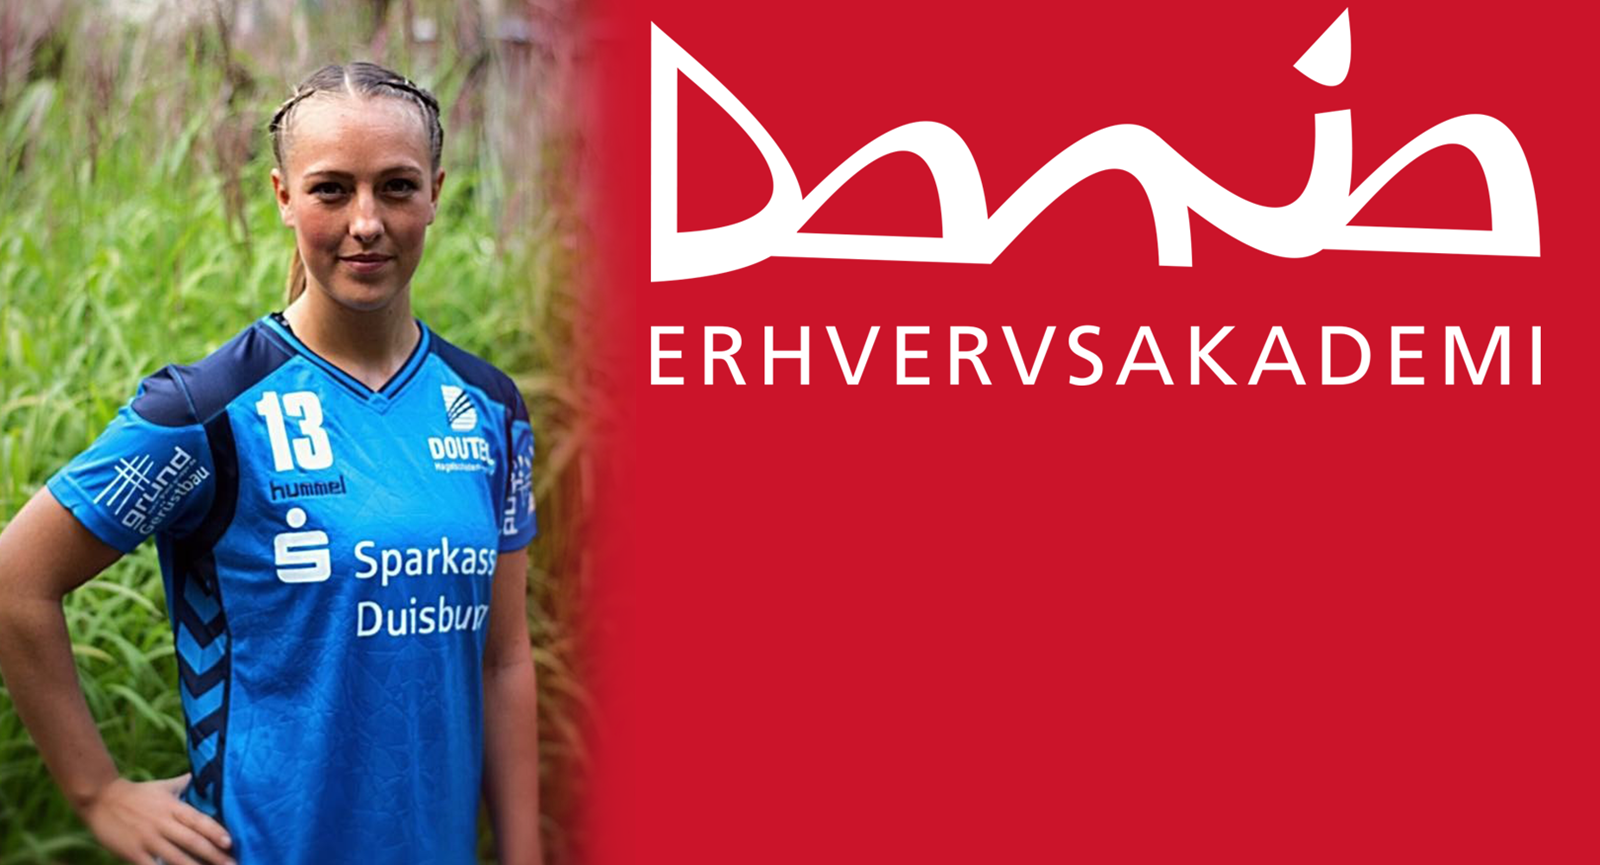 Håndboldspilleren Mie i blåt spillertøj med Danias logo ved siden af